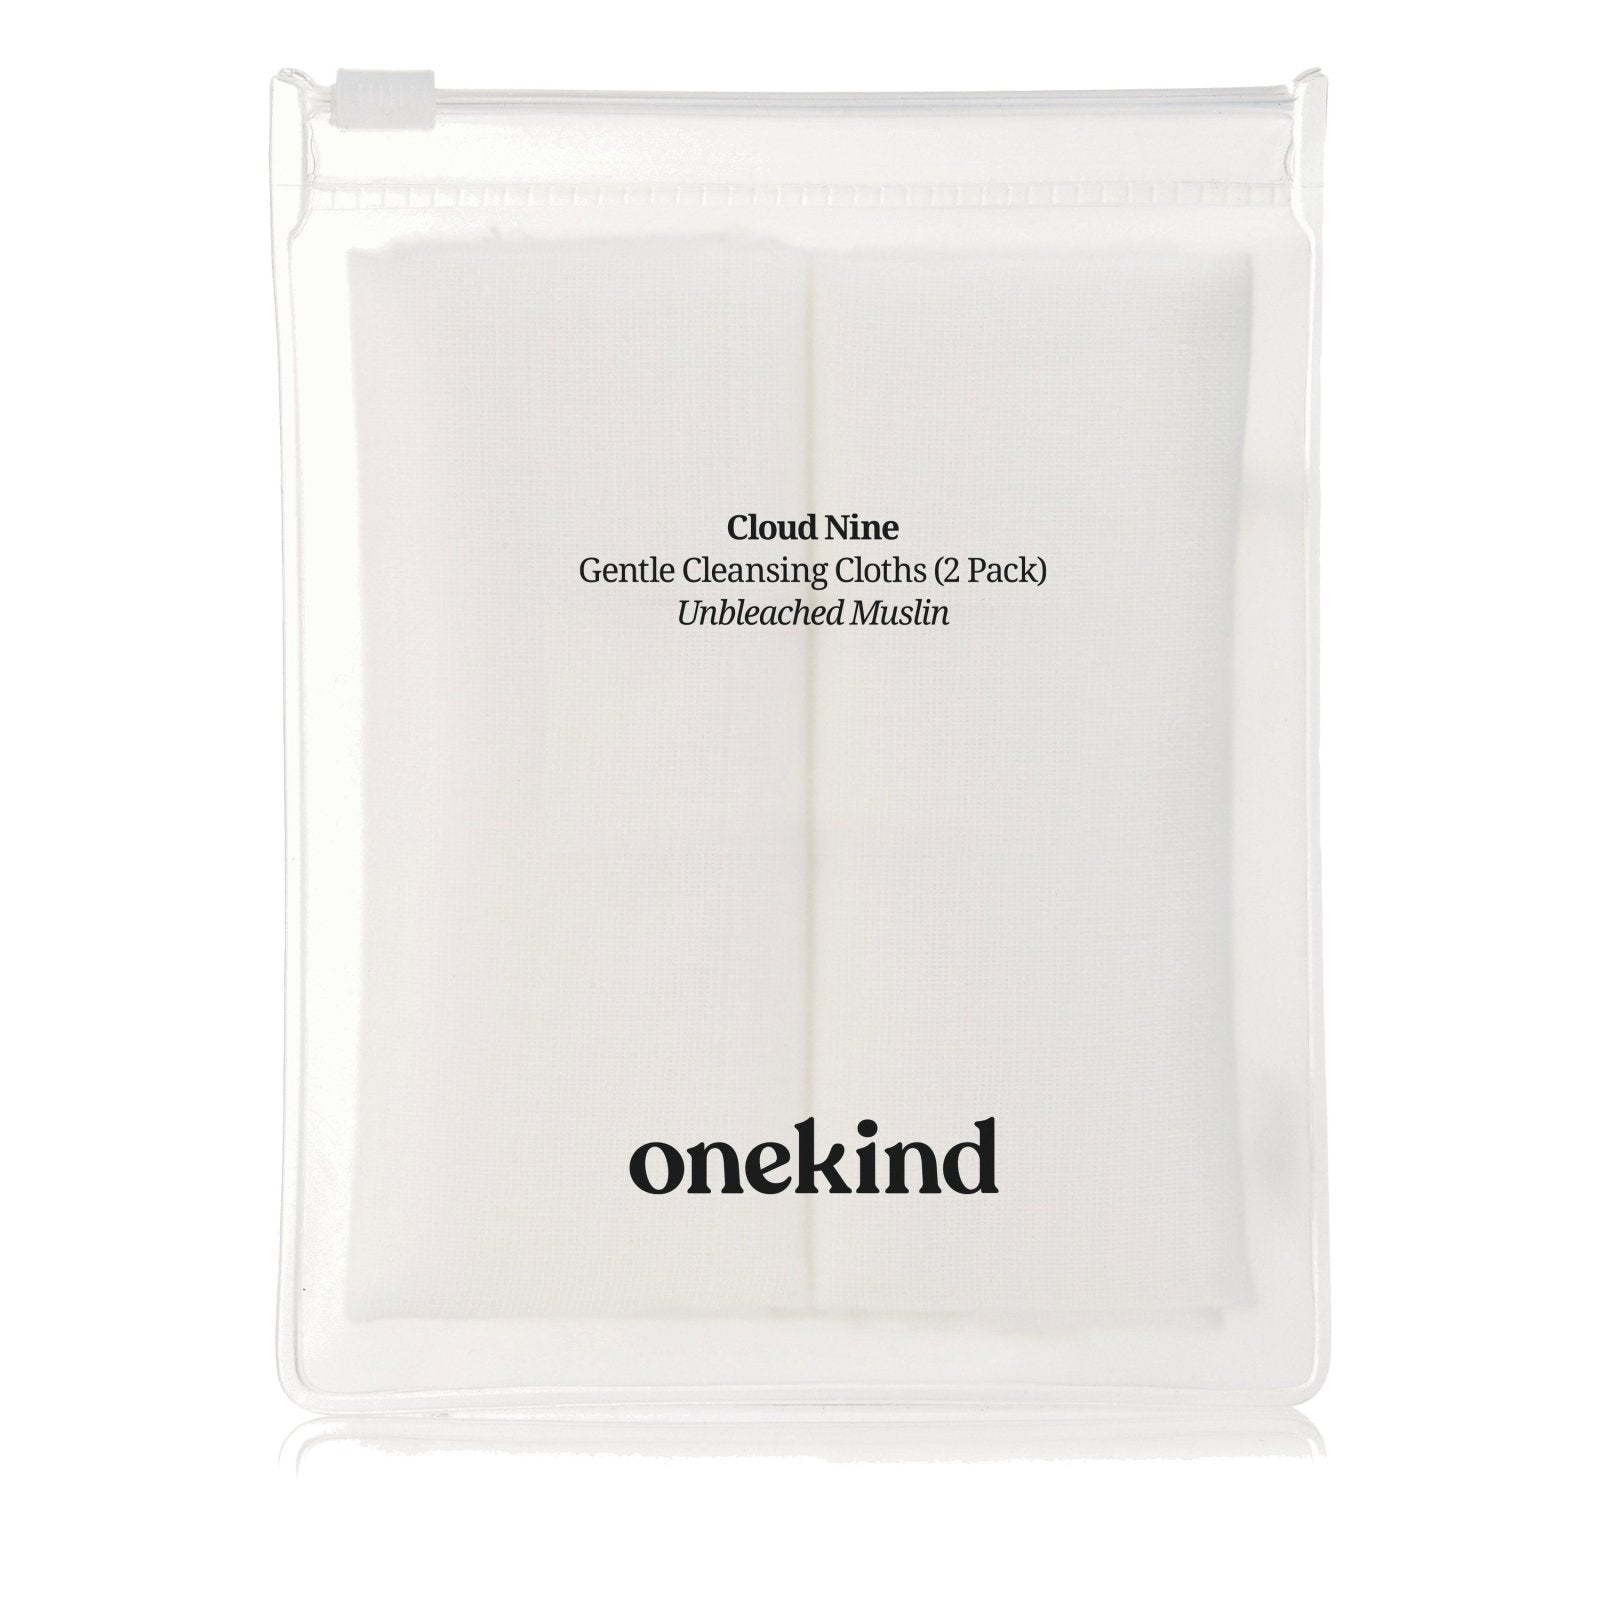 Cloud Nine Gentle Cleansing Cloths - Onekind